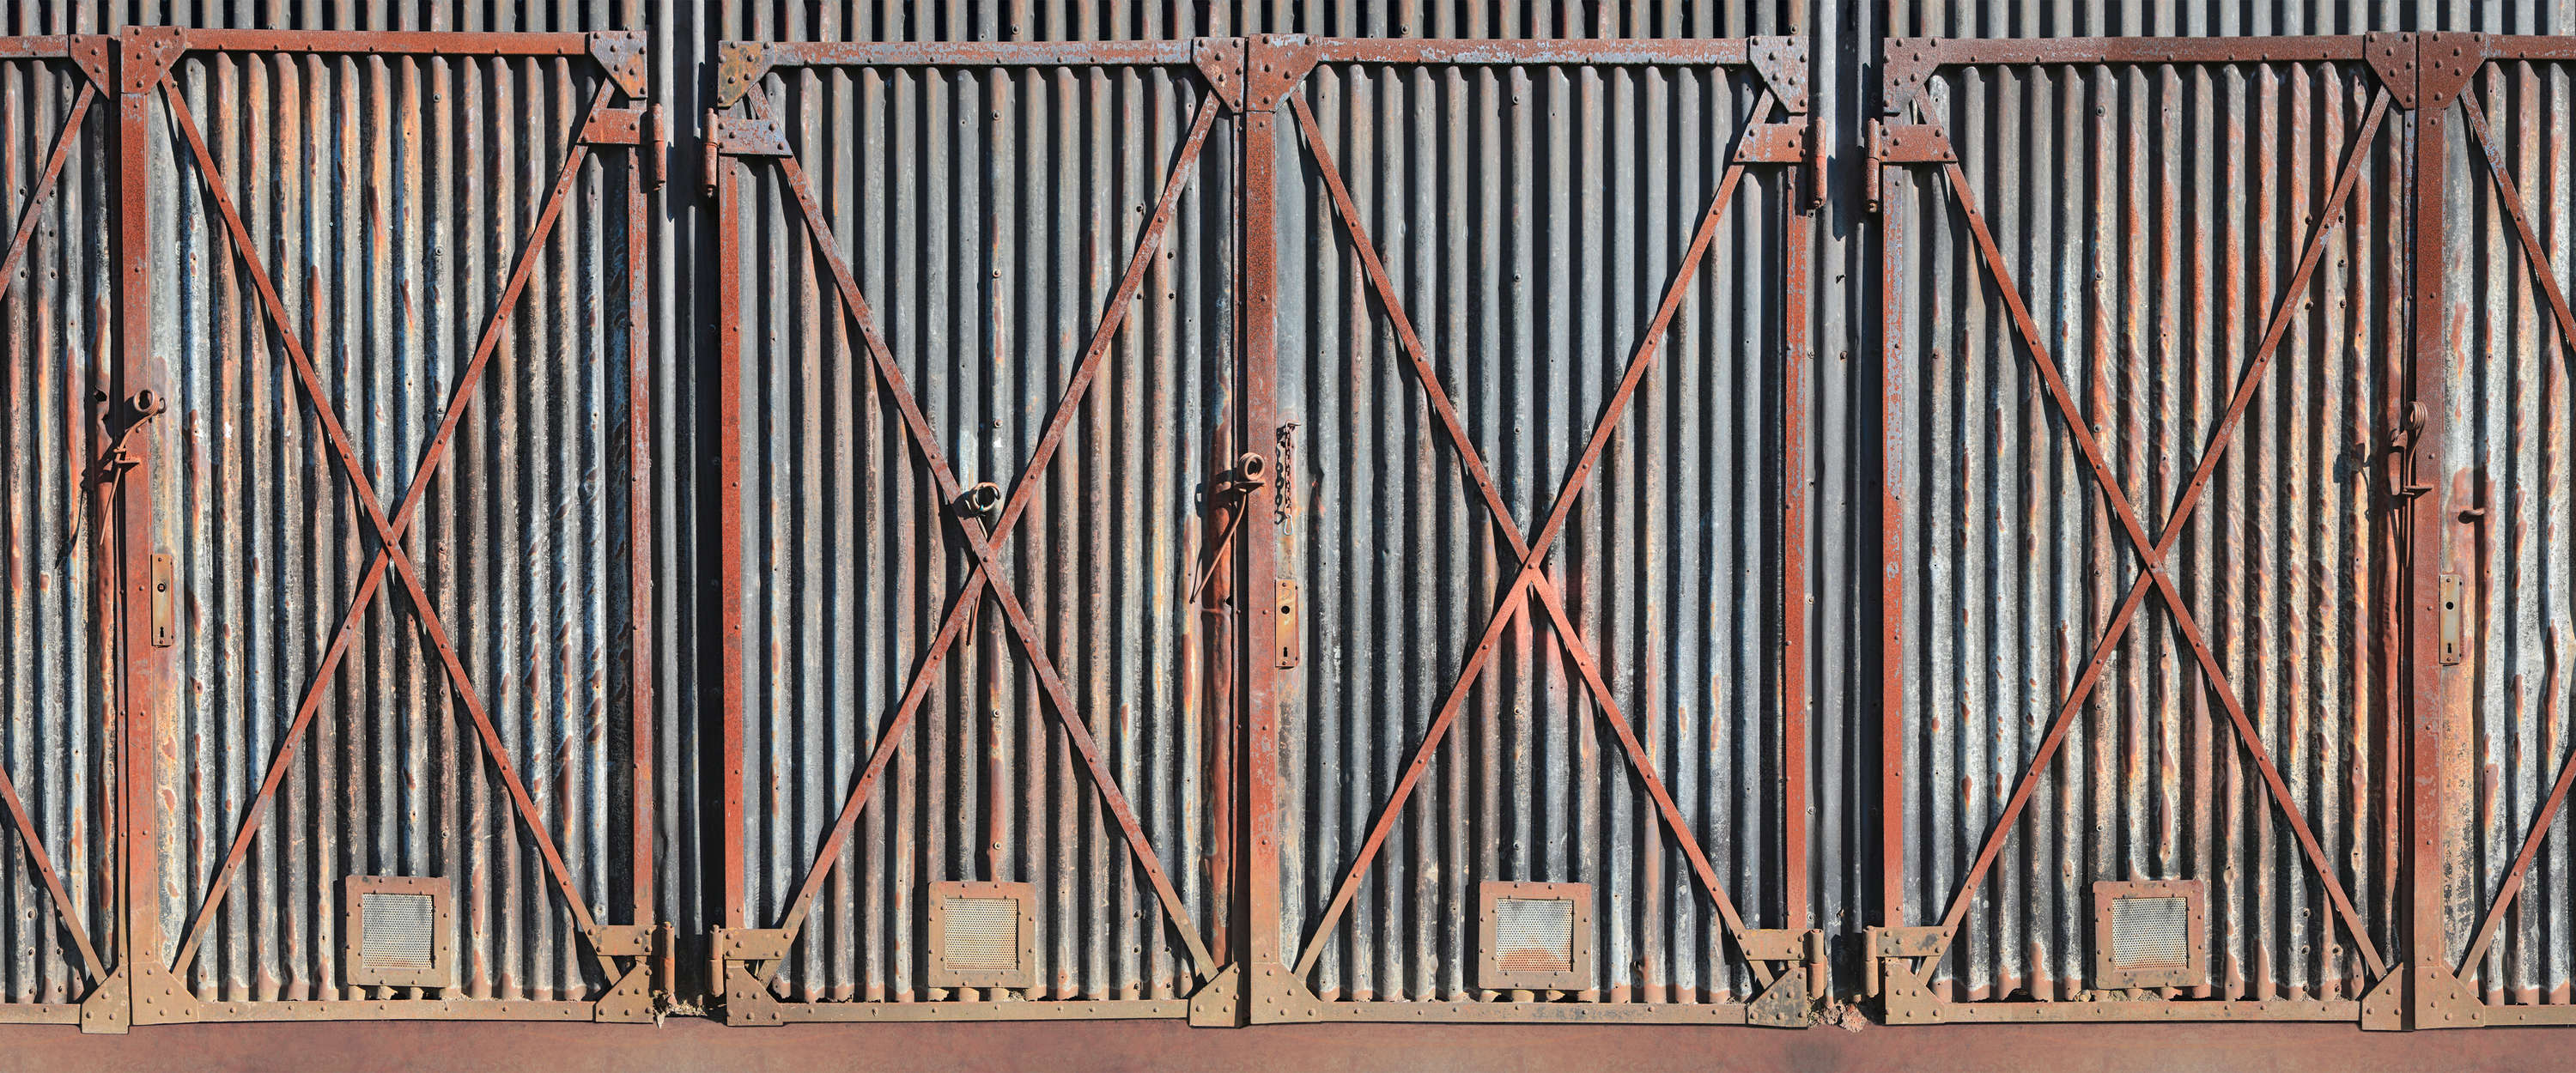             Photo wallpaper steel gate rusty in industrial style
        